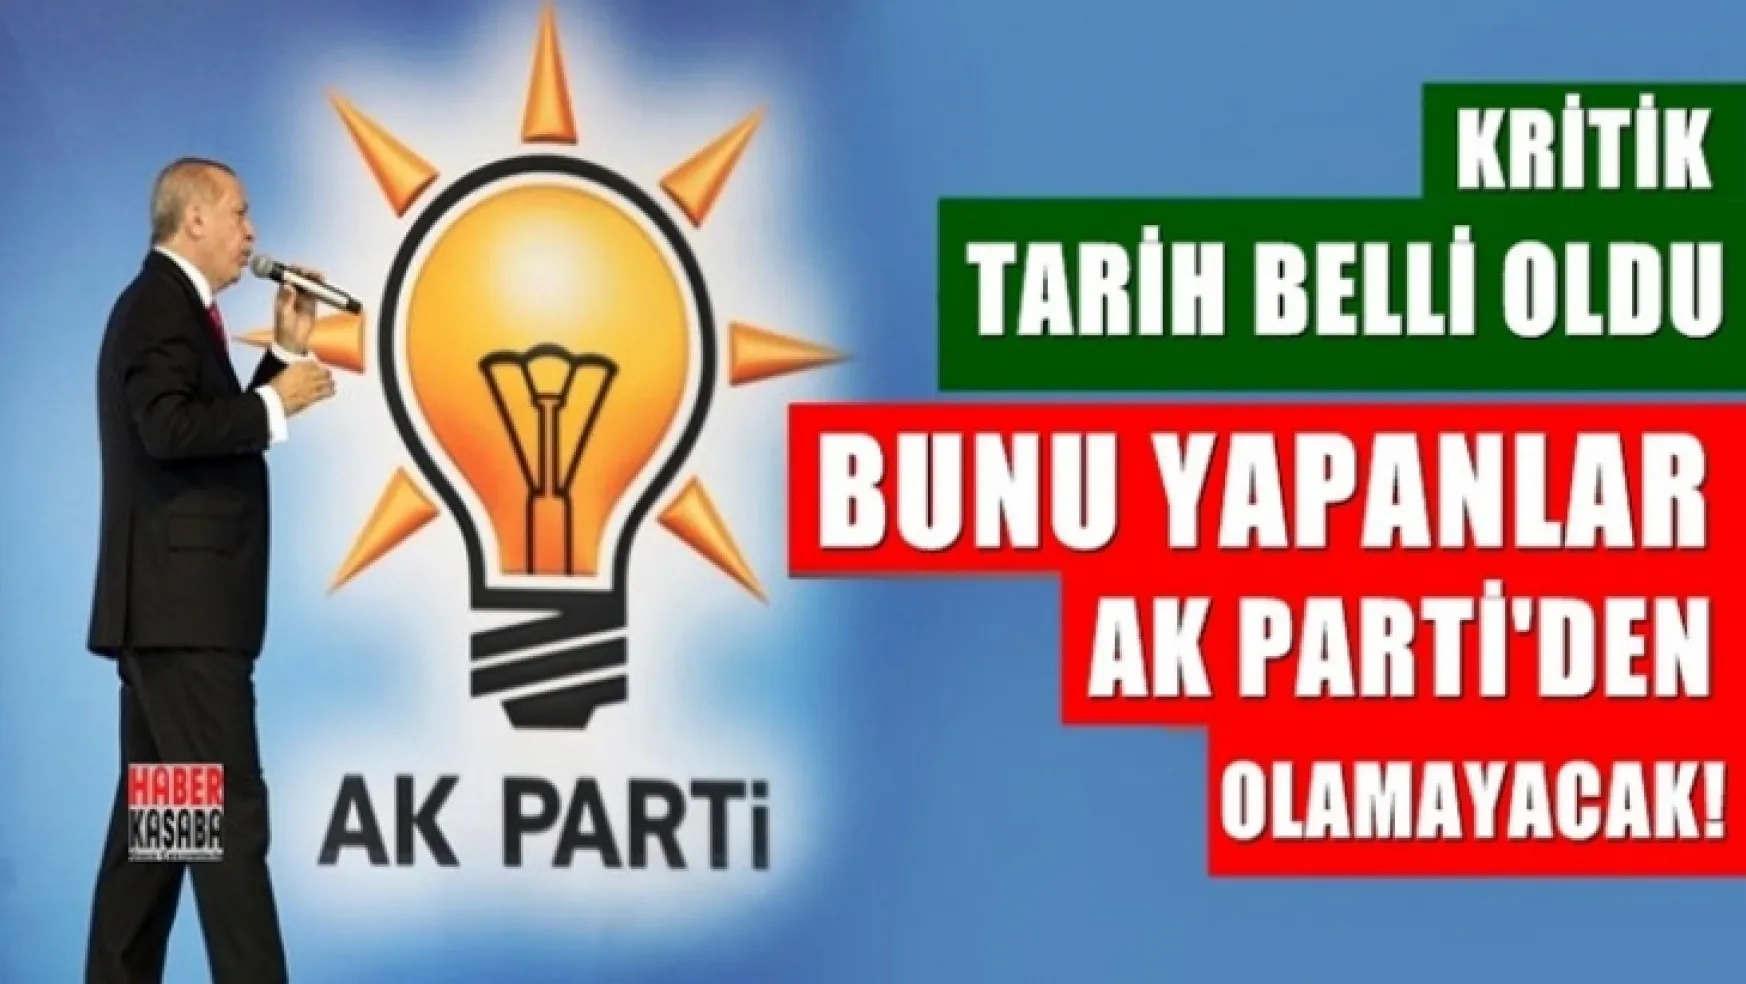 AK Parti'de kritik tarih belli oldu: Bunu yapanlar aday olamayacak!